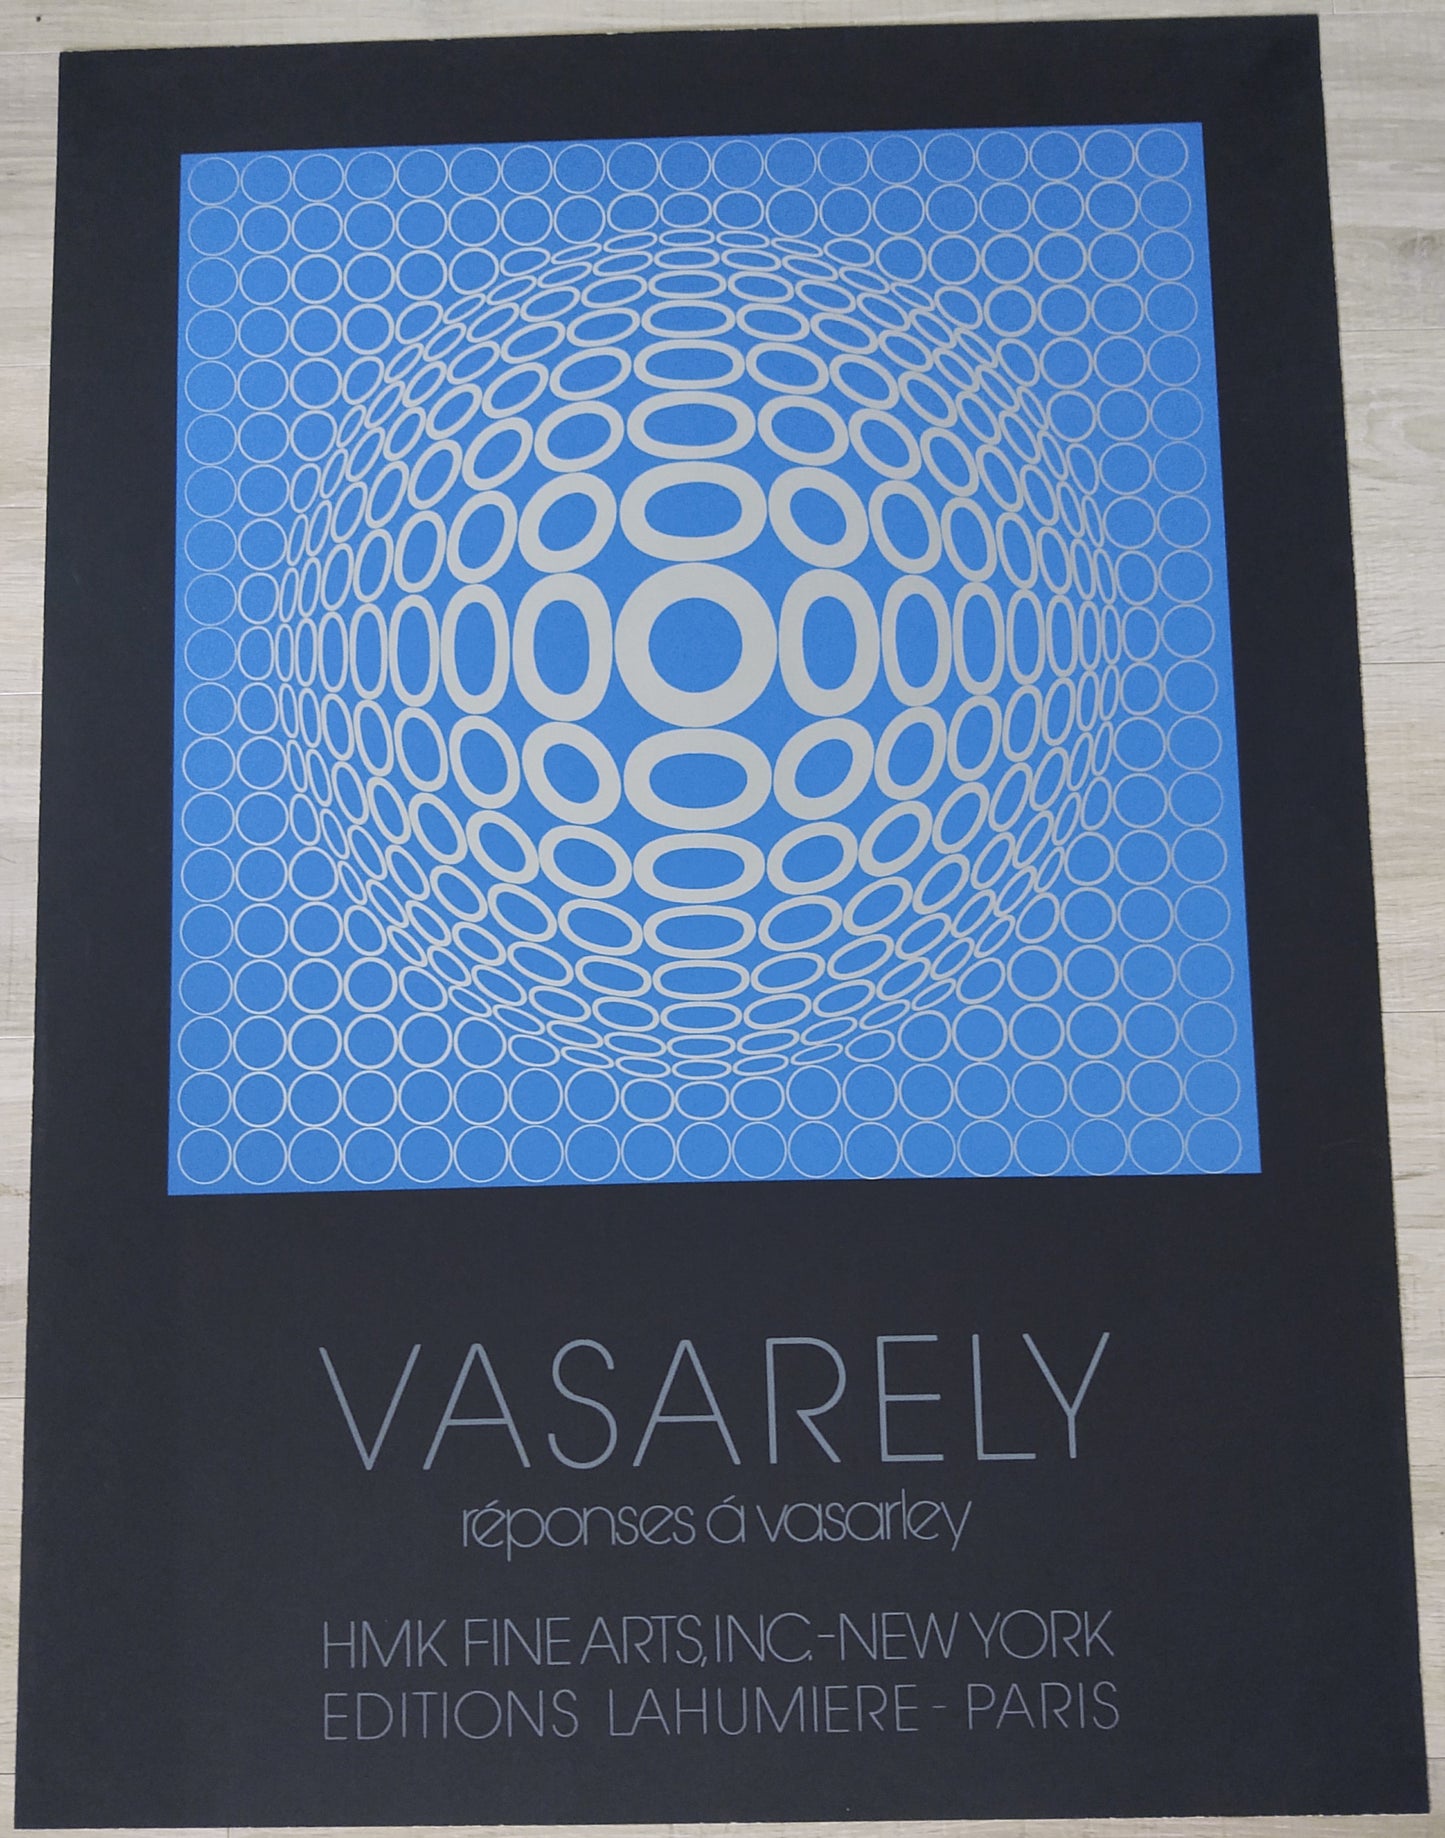 Victor Vasarely HMK Fine Arts NYC-Paris 28.5" x 38.5"